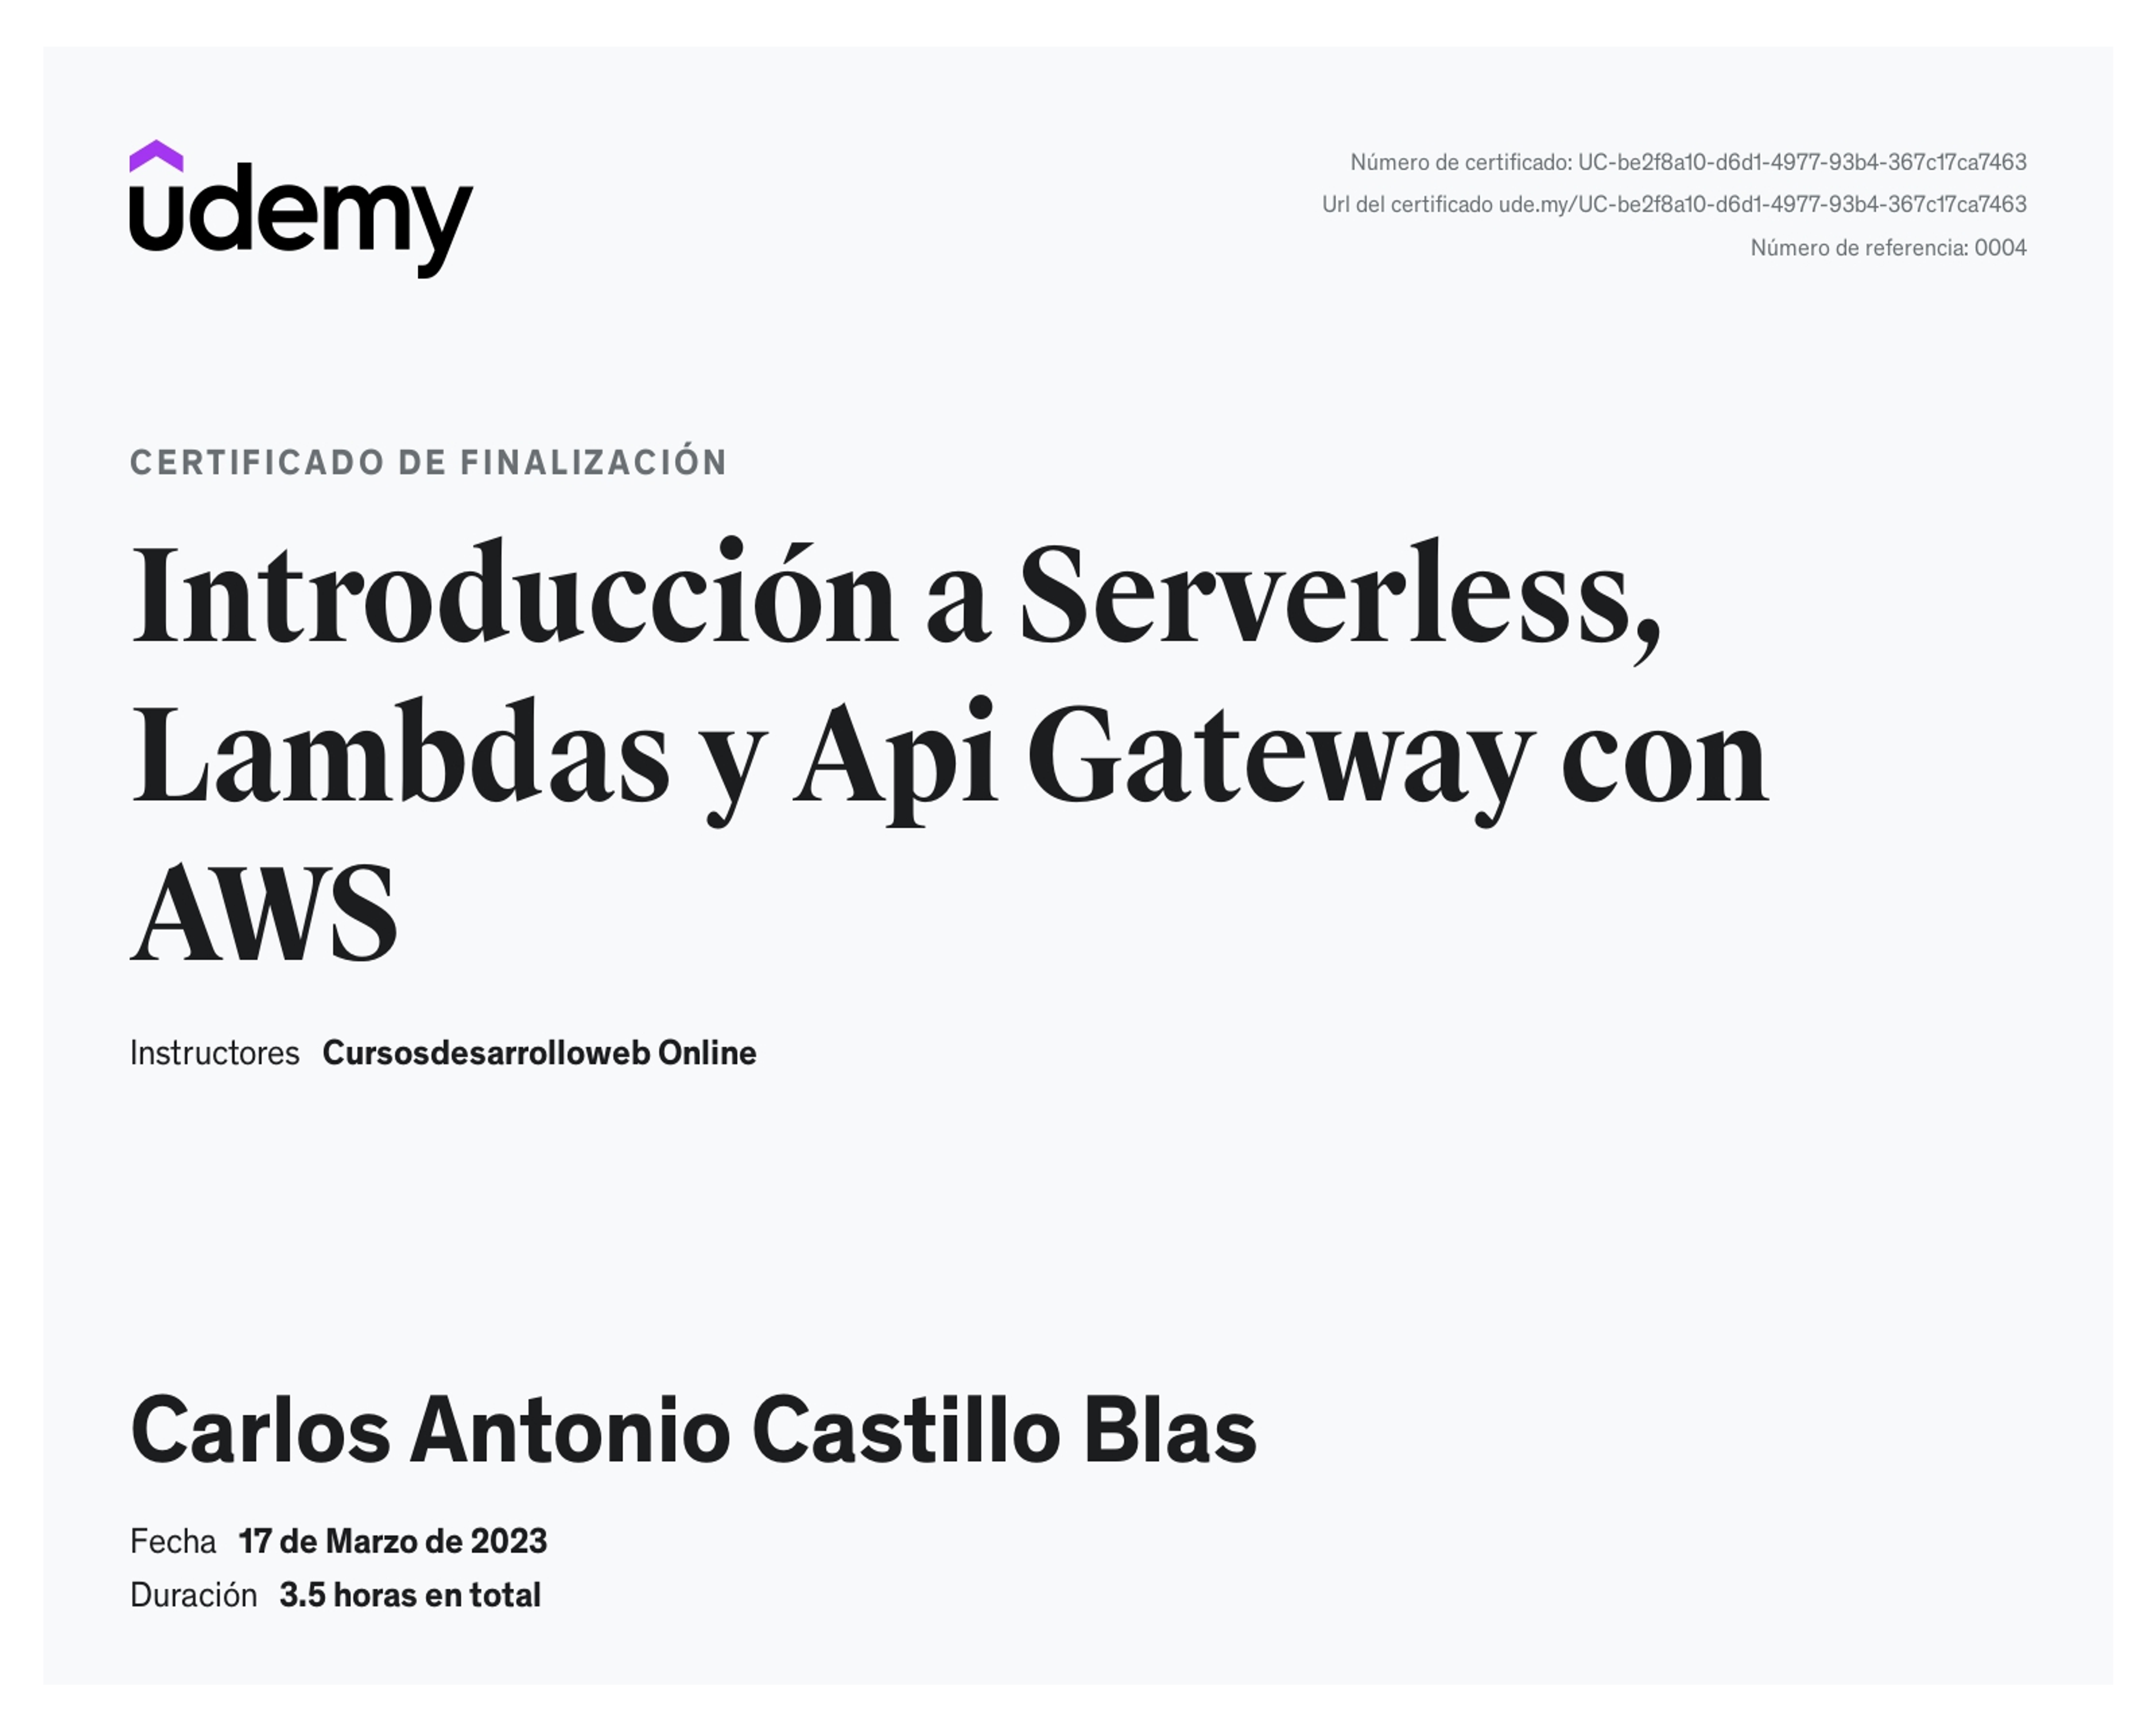  Introducción a Serverless, Lambdas y Api Gateway con AWS